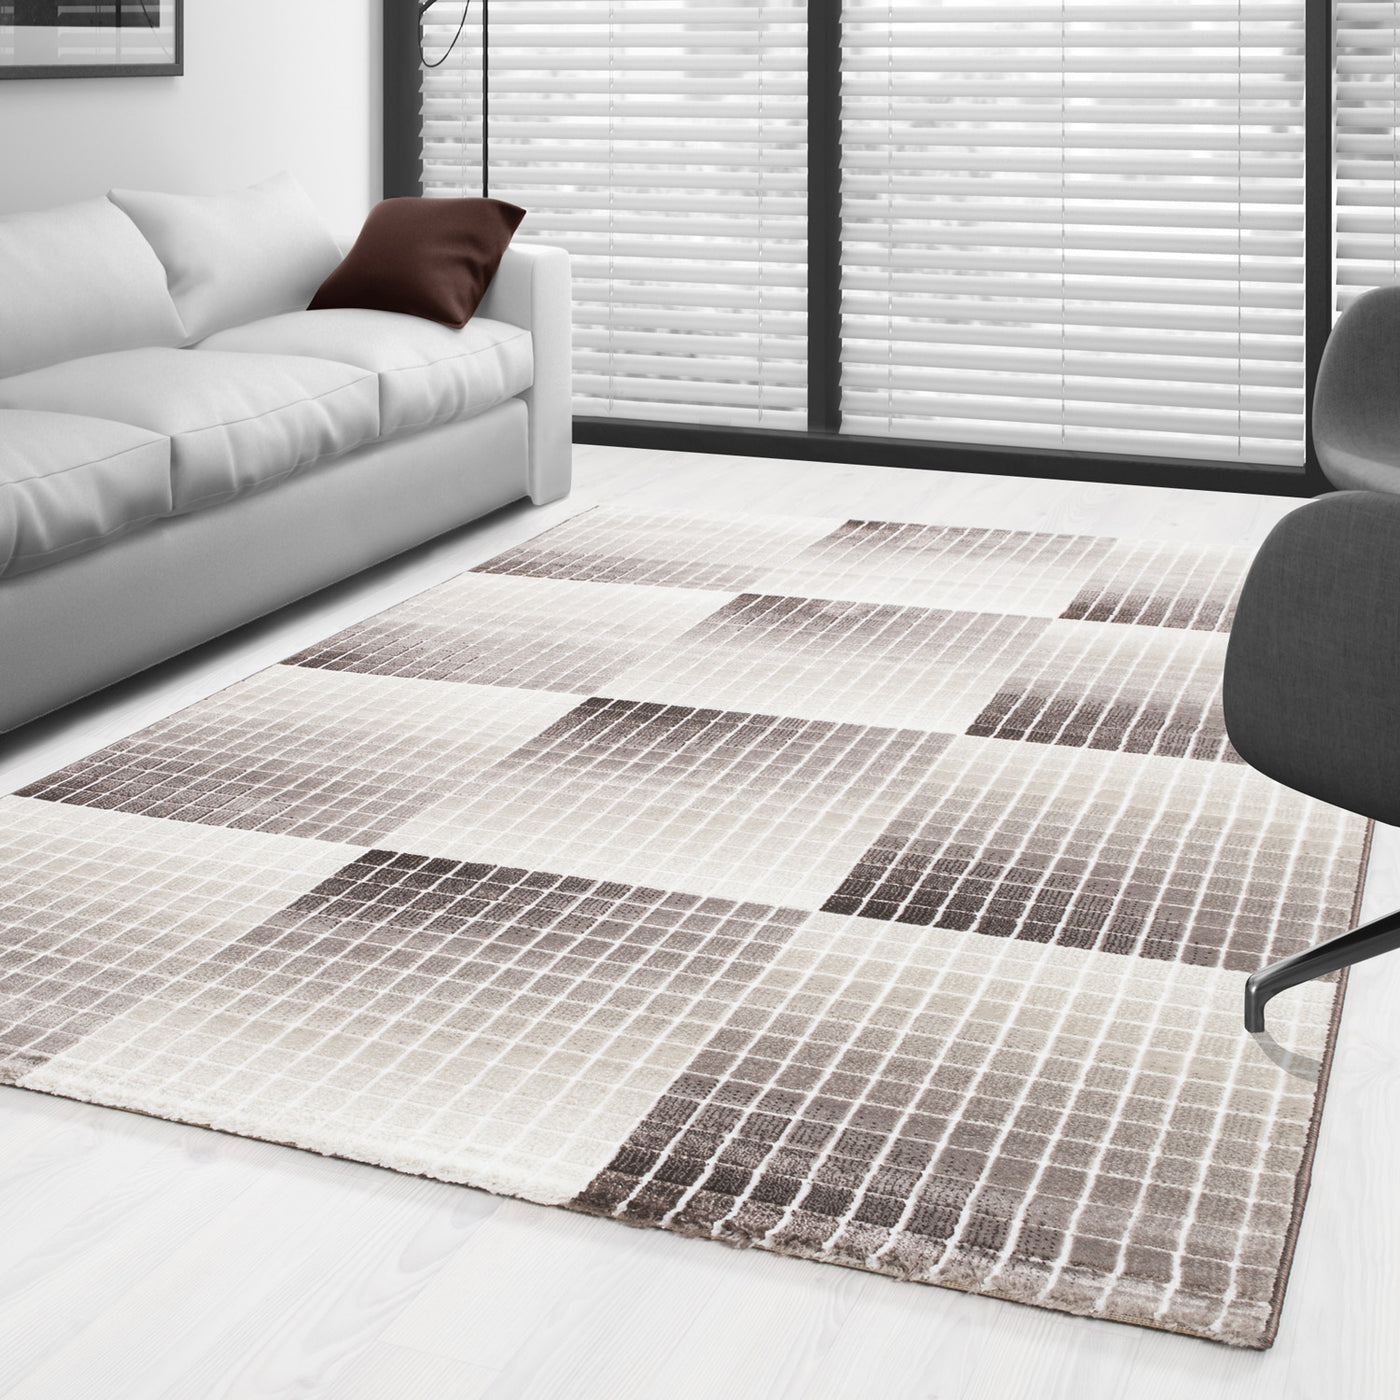 Designer Teppich Modern Wohnzimmer Kurzflor Karo Muster Mosaik Optik Meliert Braun Beige Creme